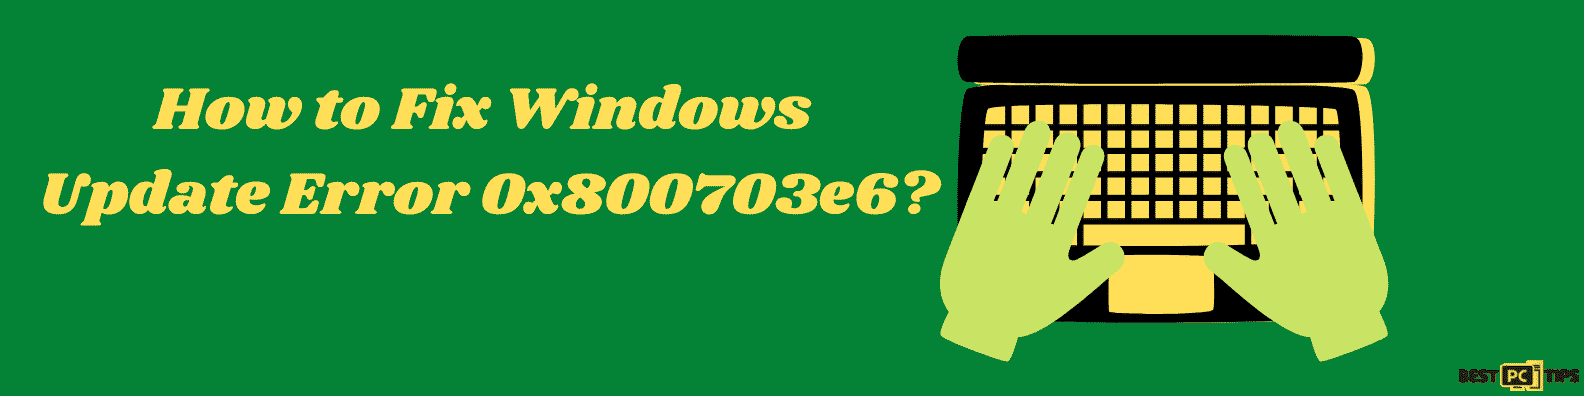 Fix Windows Update Error 0x800703e6